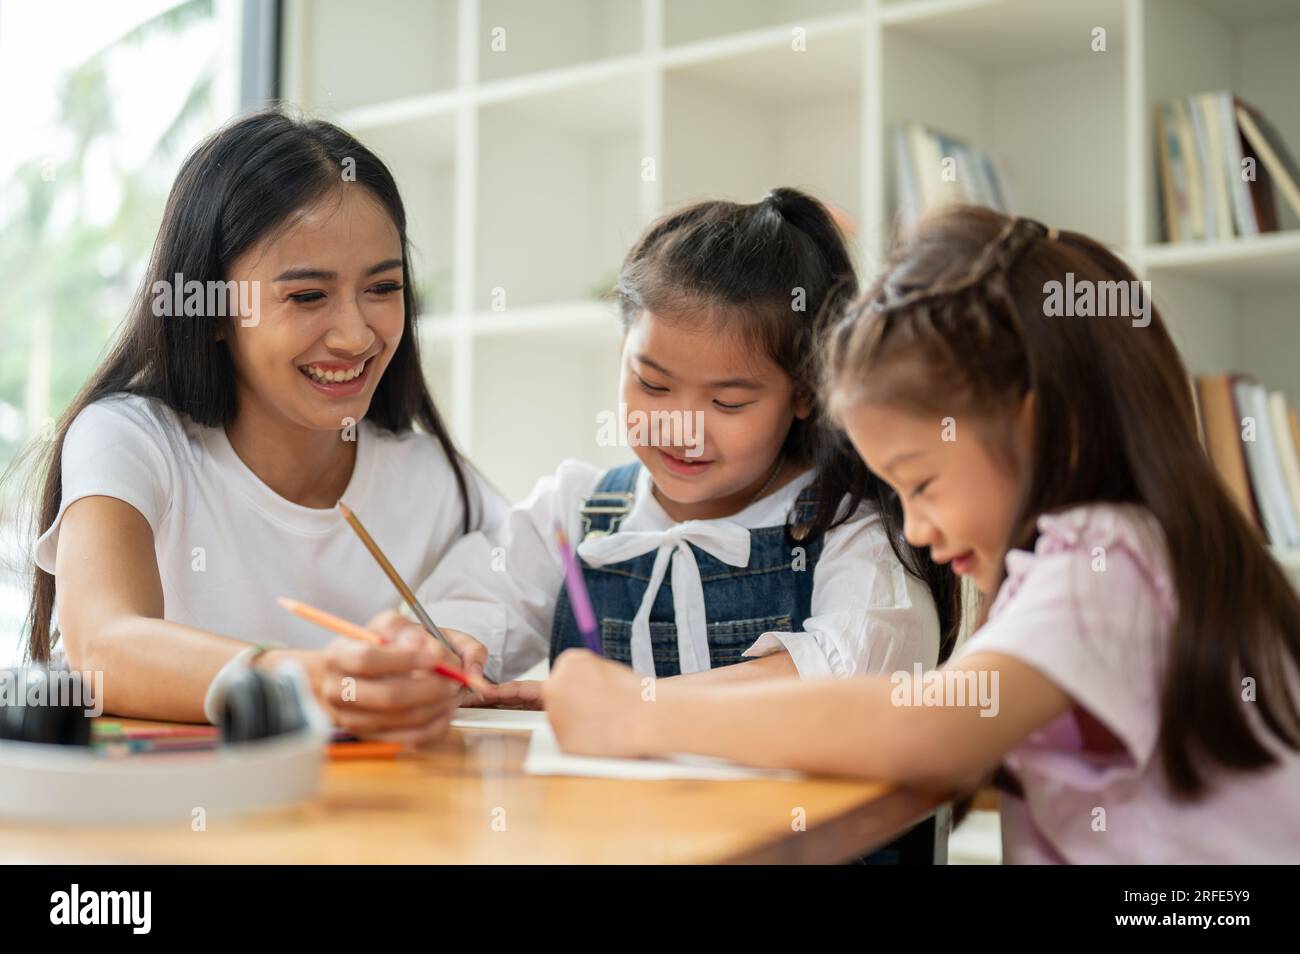 Un professeur ou un professeur privé féminin asiatique de genre enseigne aux jeunes étudiants à la maison. maternelle, élèves de l'école primaire, enfants, garde d'enfants, enseignant Banque D'Images